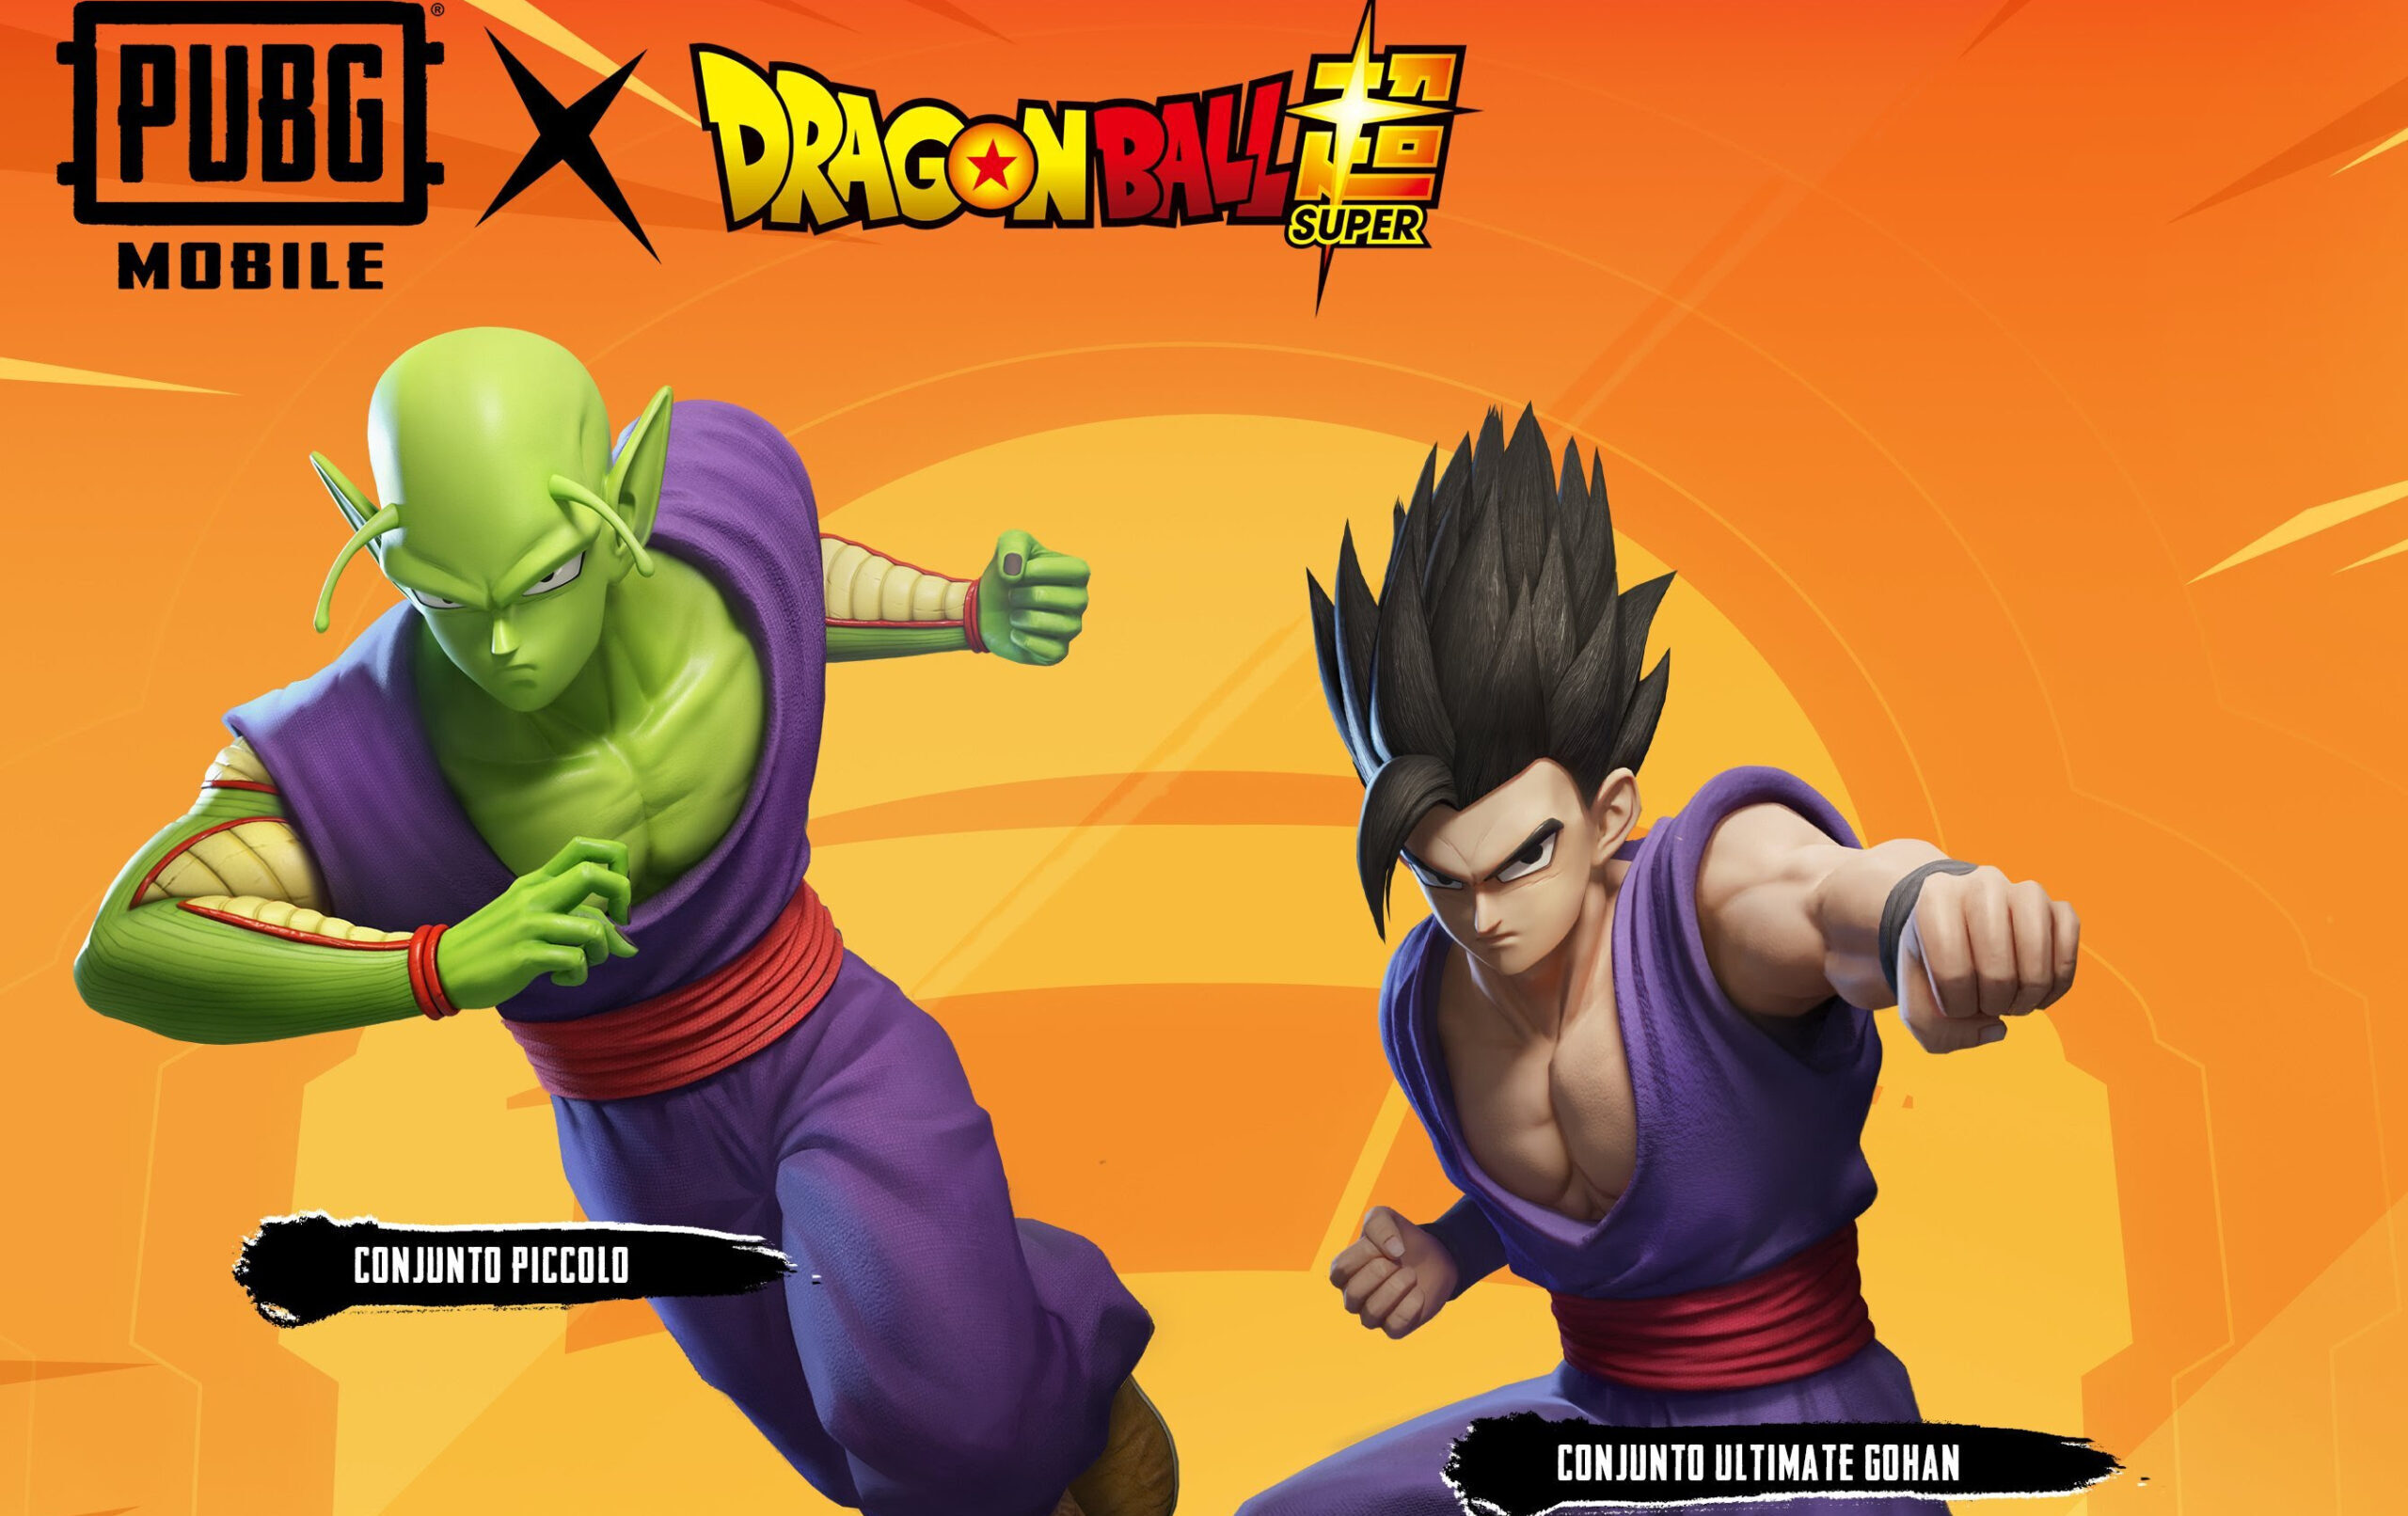 Dragon Ball no Fortnite: Goku, Vegeta e outros personagens chegam